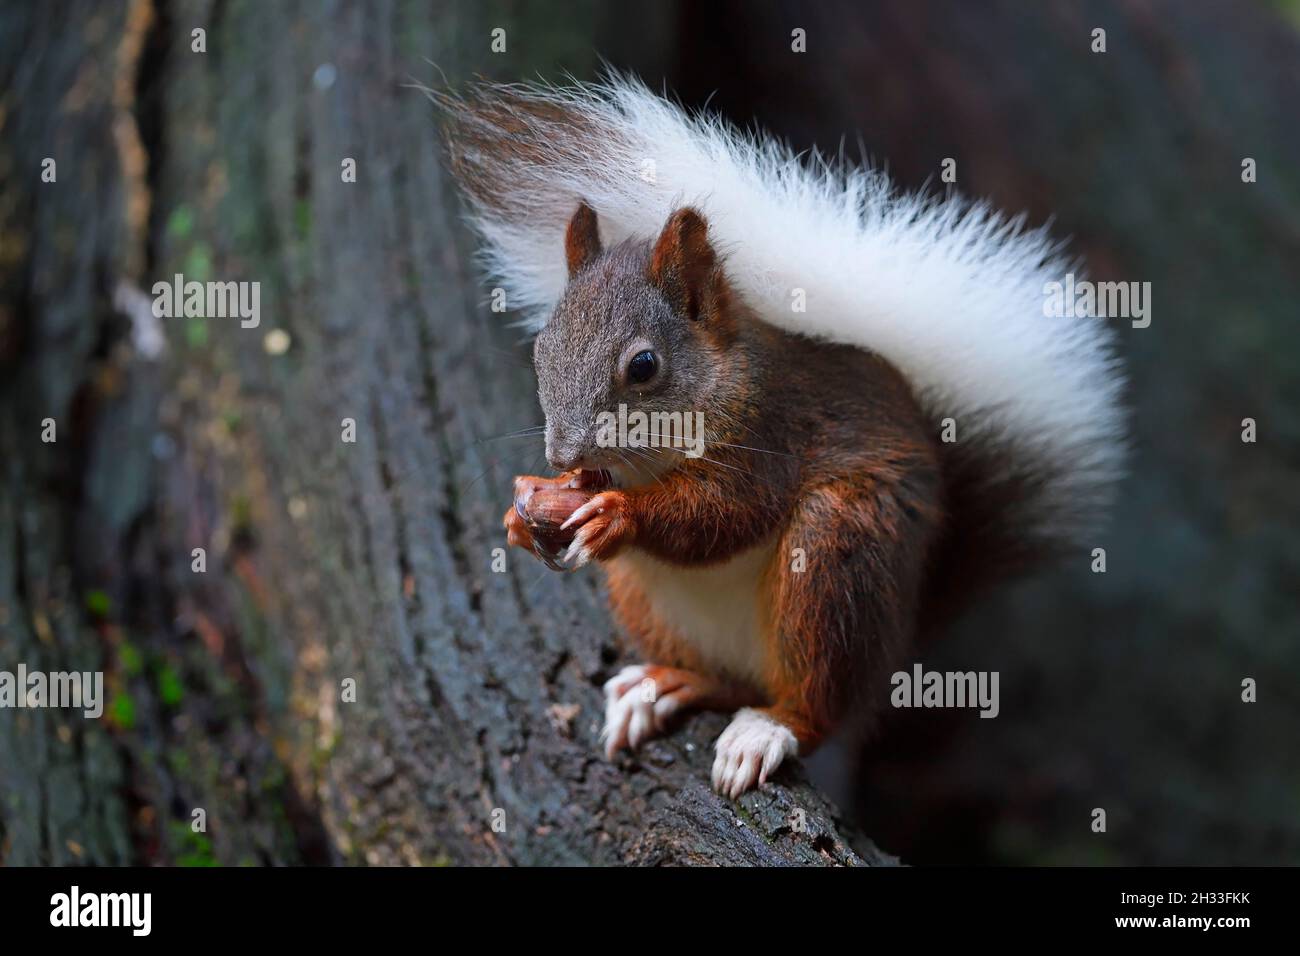 Eichhörnchen (Sciurus vulgaris), mit weissem Schwanz, Albinismuserscheinung, frisst Nuss, Brandenburg, Deutschland Stockfoto